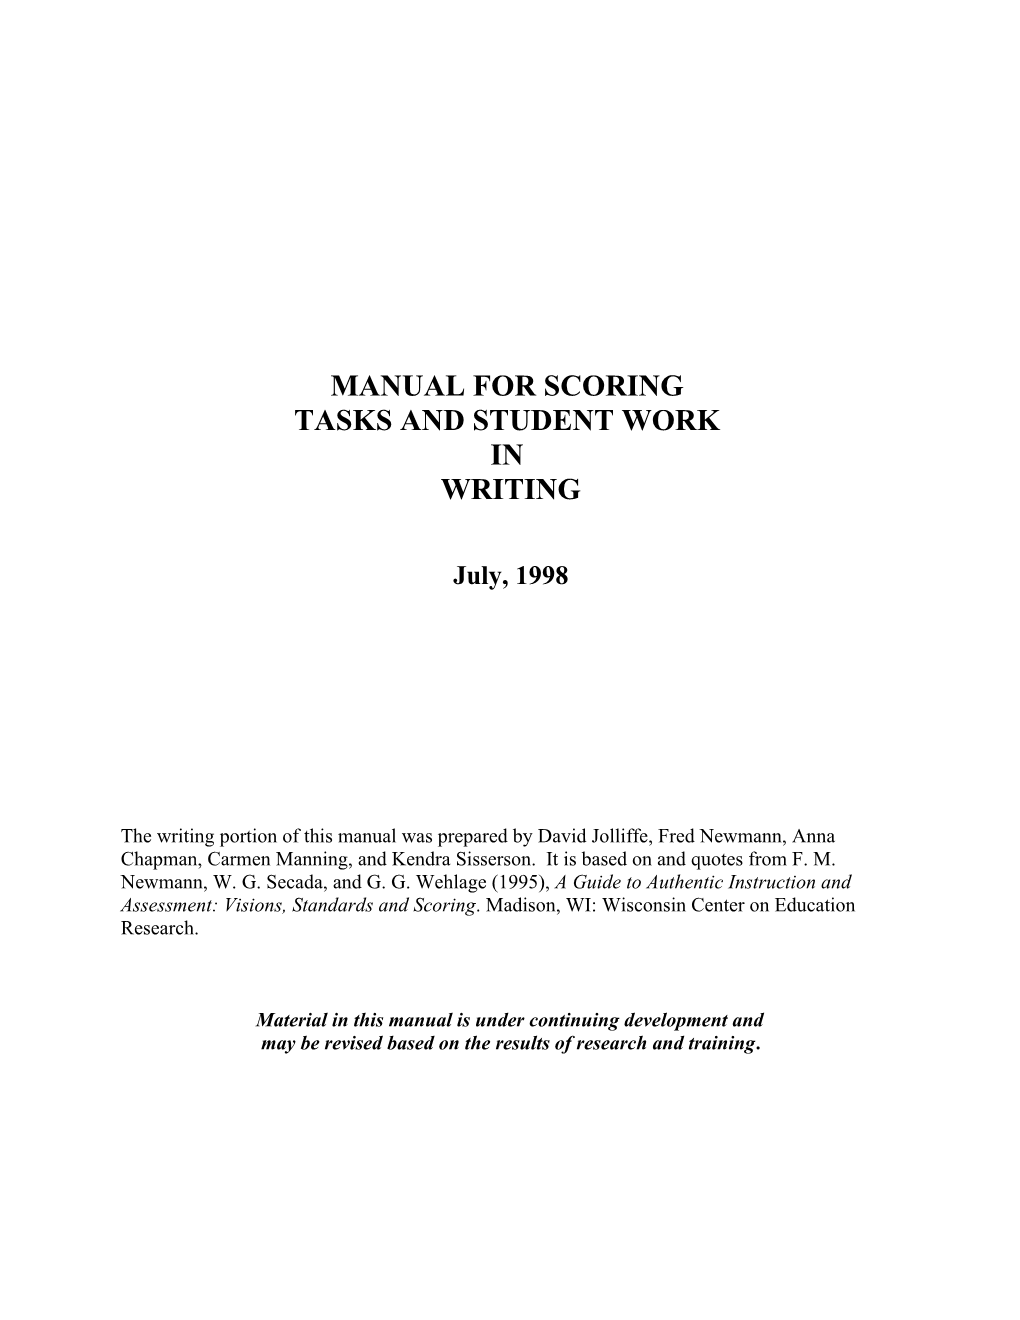 Manual for Scoring